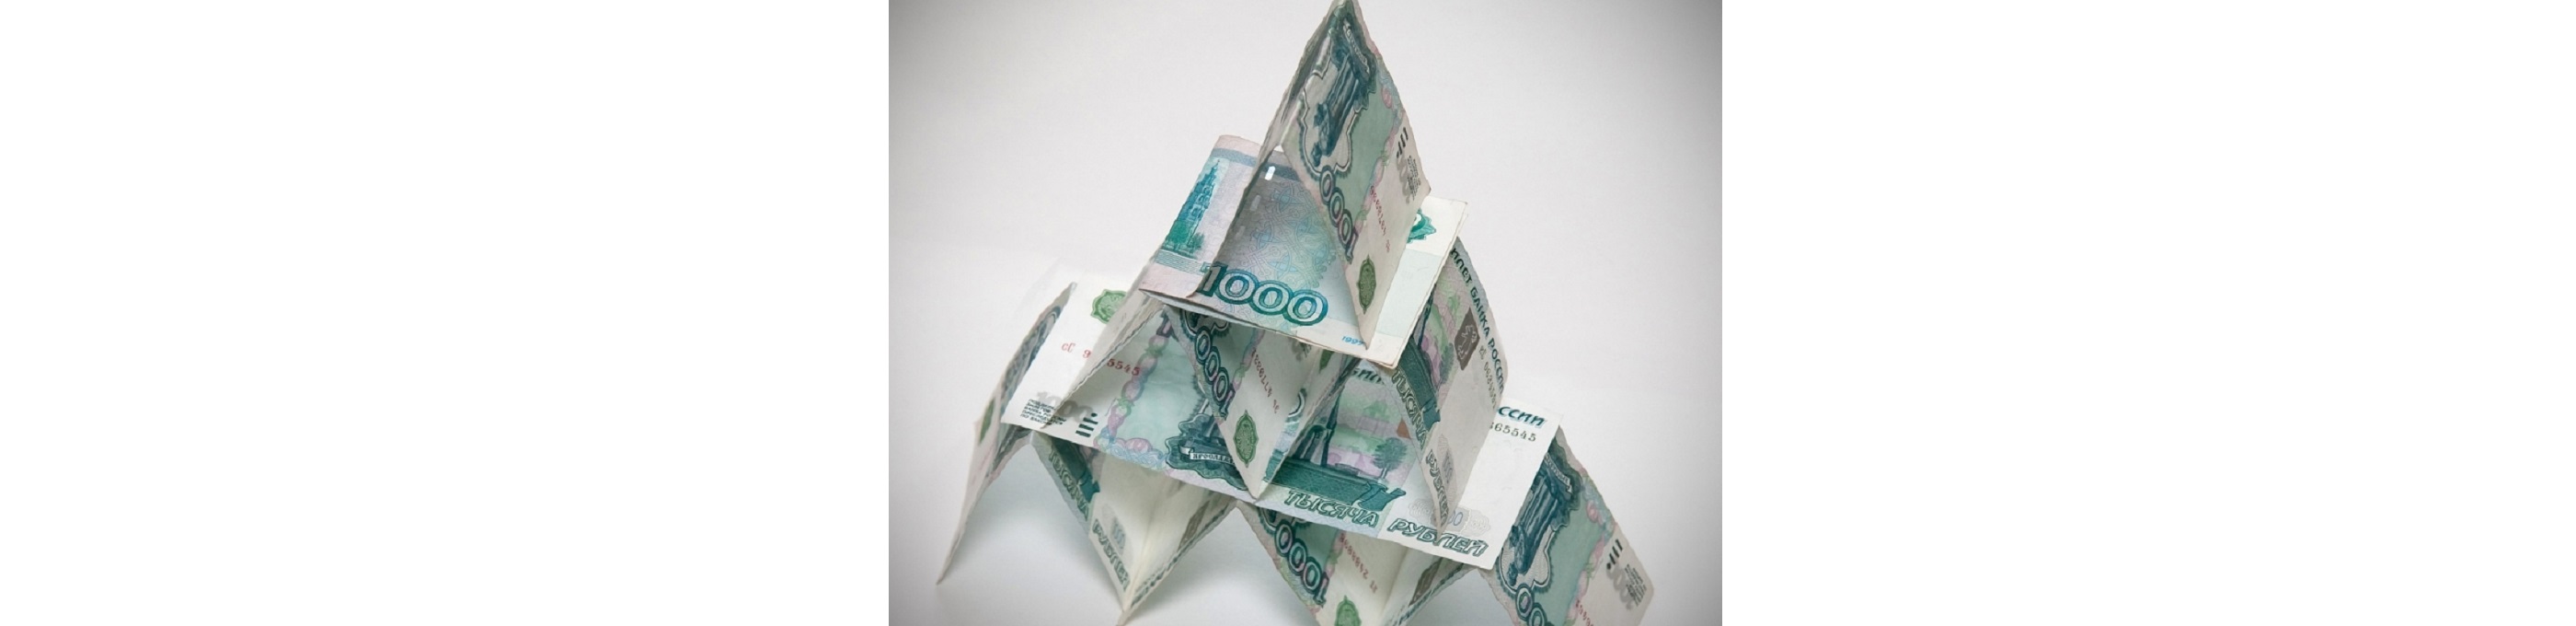 В рамках борьбы с мошенниками в финансовой сфере, Центробанком была выявлена пирамида "Кэшбери", которая благодаря заманчивой рекламе привлекла десятки тысячи вкладчиков.